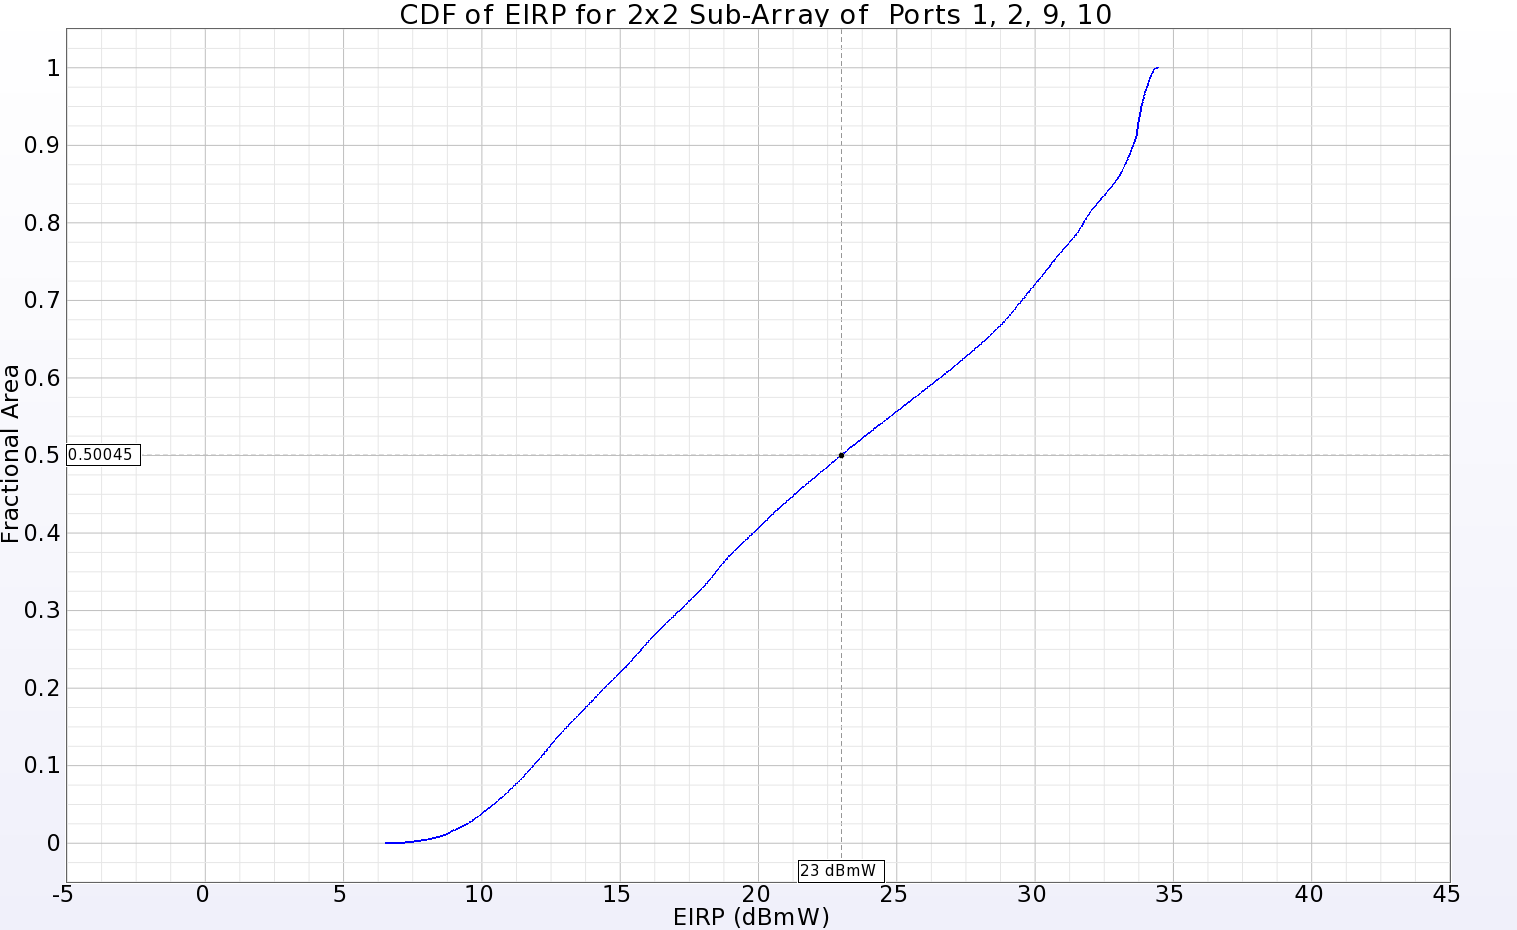 图 13：位于主阵列一角的 2x2 子阵列的 EIRP CDF 图，显示输入功率为 23 dBmW 时，远区球面 50%以上的正增益。